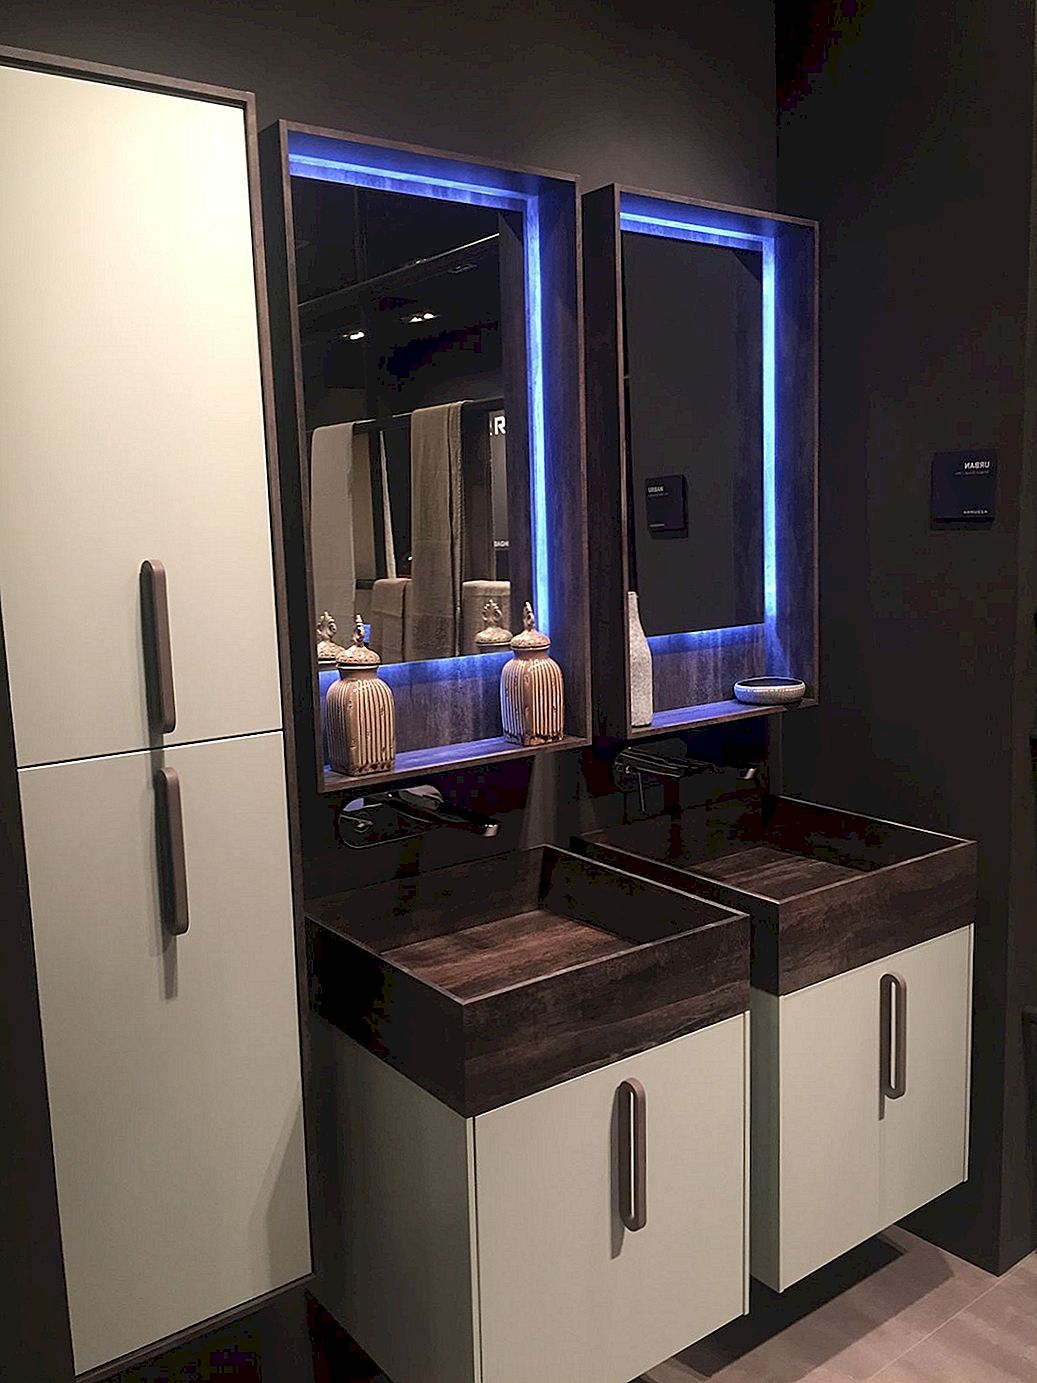 Moderni načini ukrašavanja modernog suvremenog kupaonica